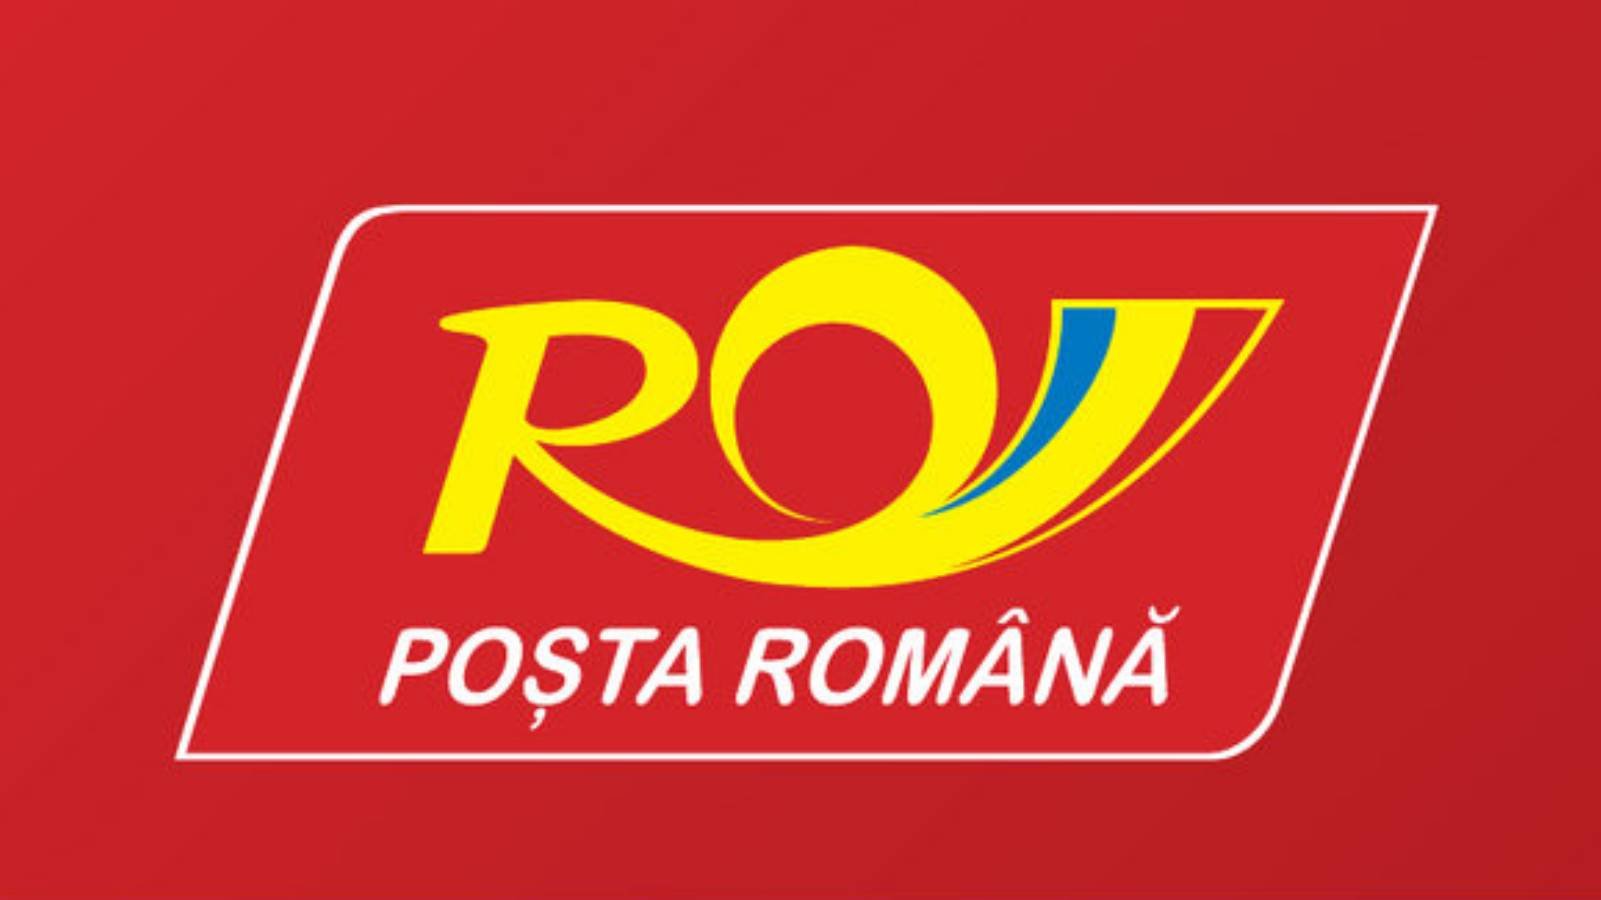 Roemeense postgoederenverzekering